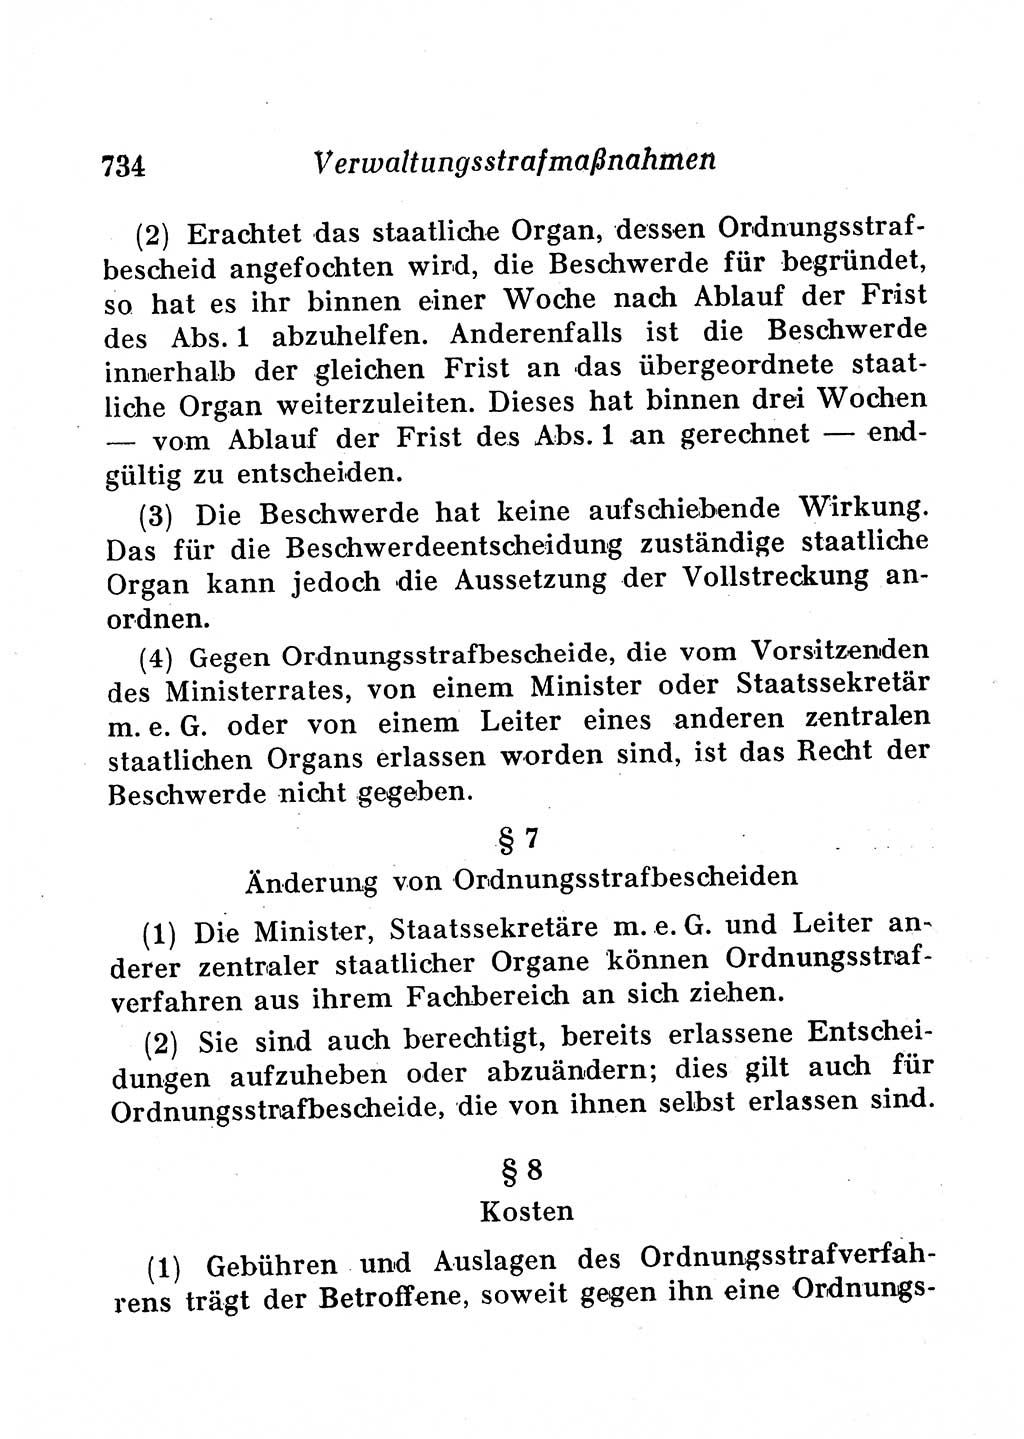 Staats- und verwaltungsrechtliche Gesetze der Deutschen Demokratischen Republik (DDR) 1958, Seite 734 (StVerwR Ges. DDR 1958, S. 734)